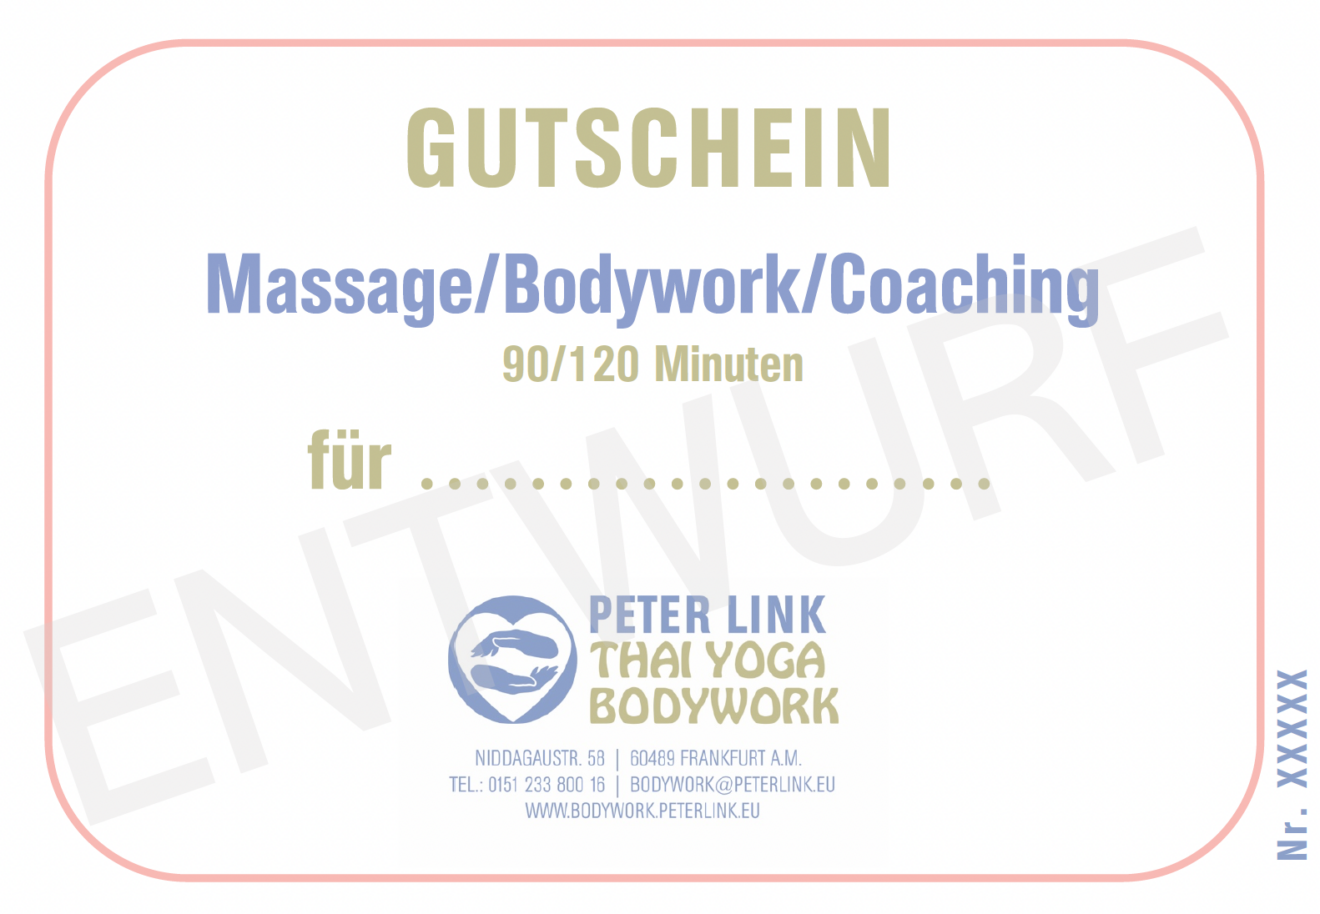 Vorlage für einen Gutschein für Massage, Bodywork oder Coaching